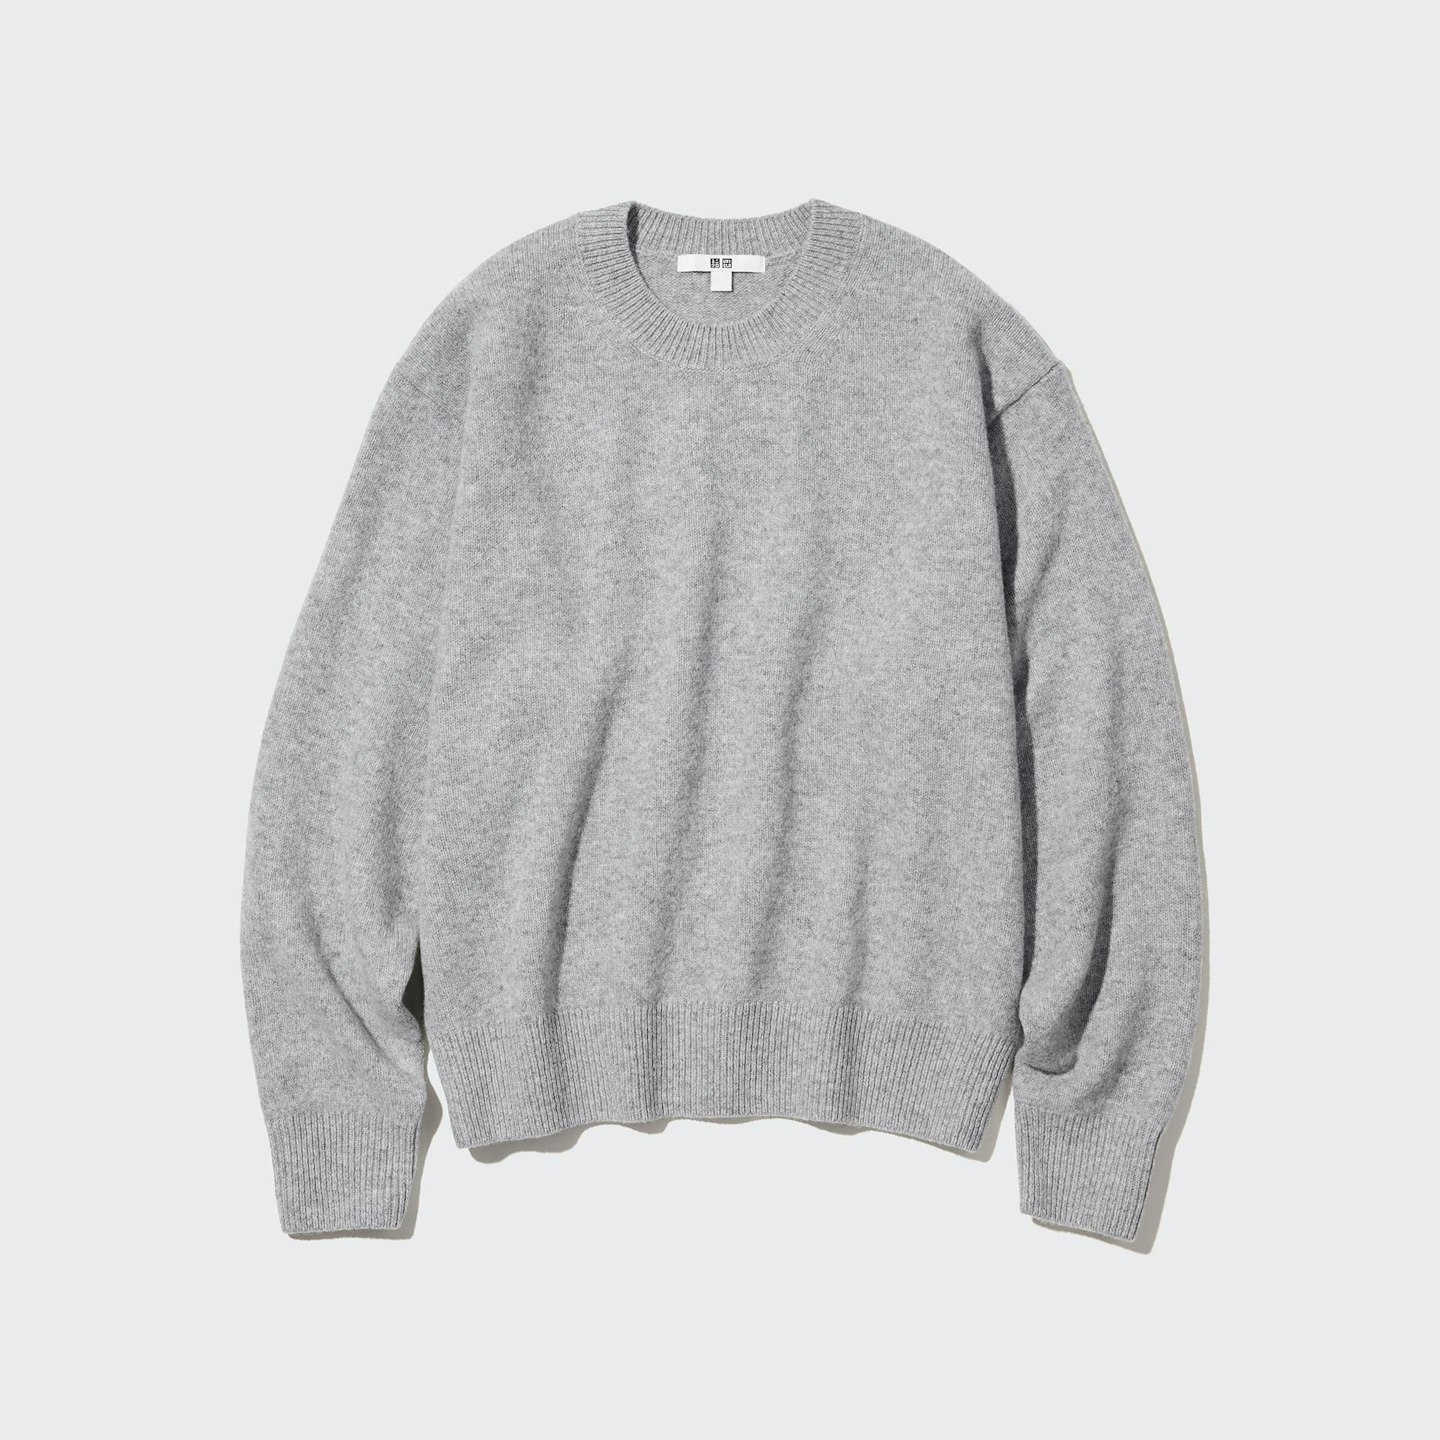 Uniqlo grey jumper